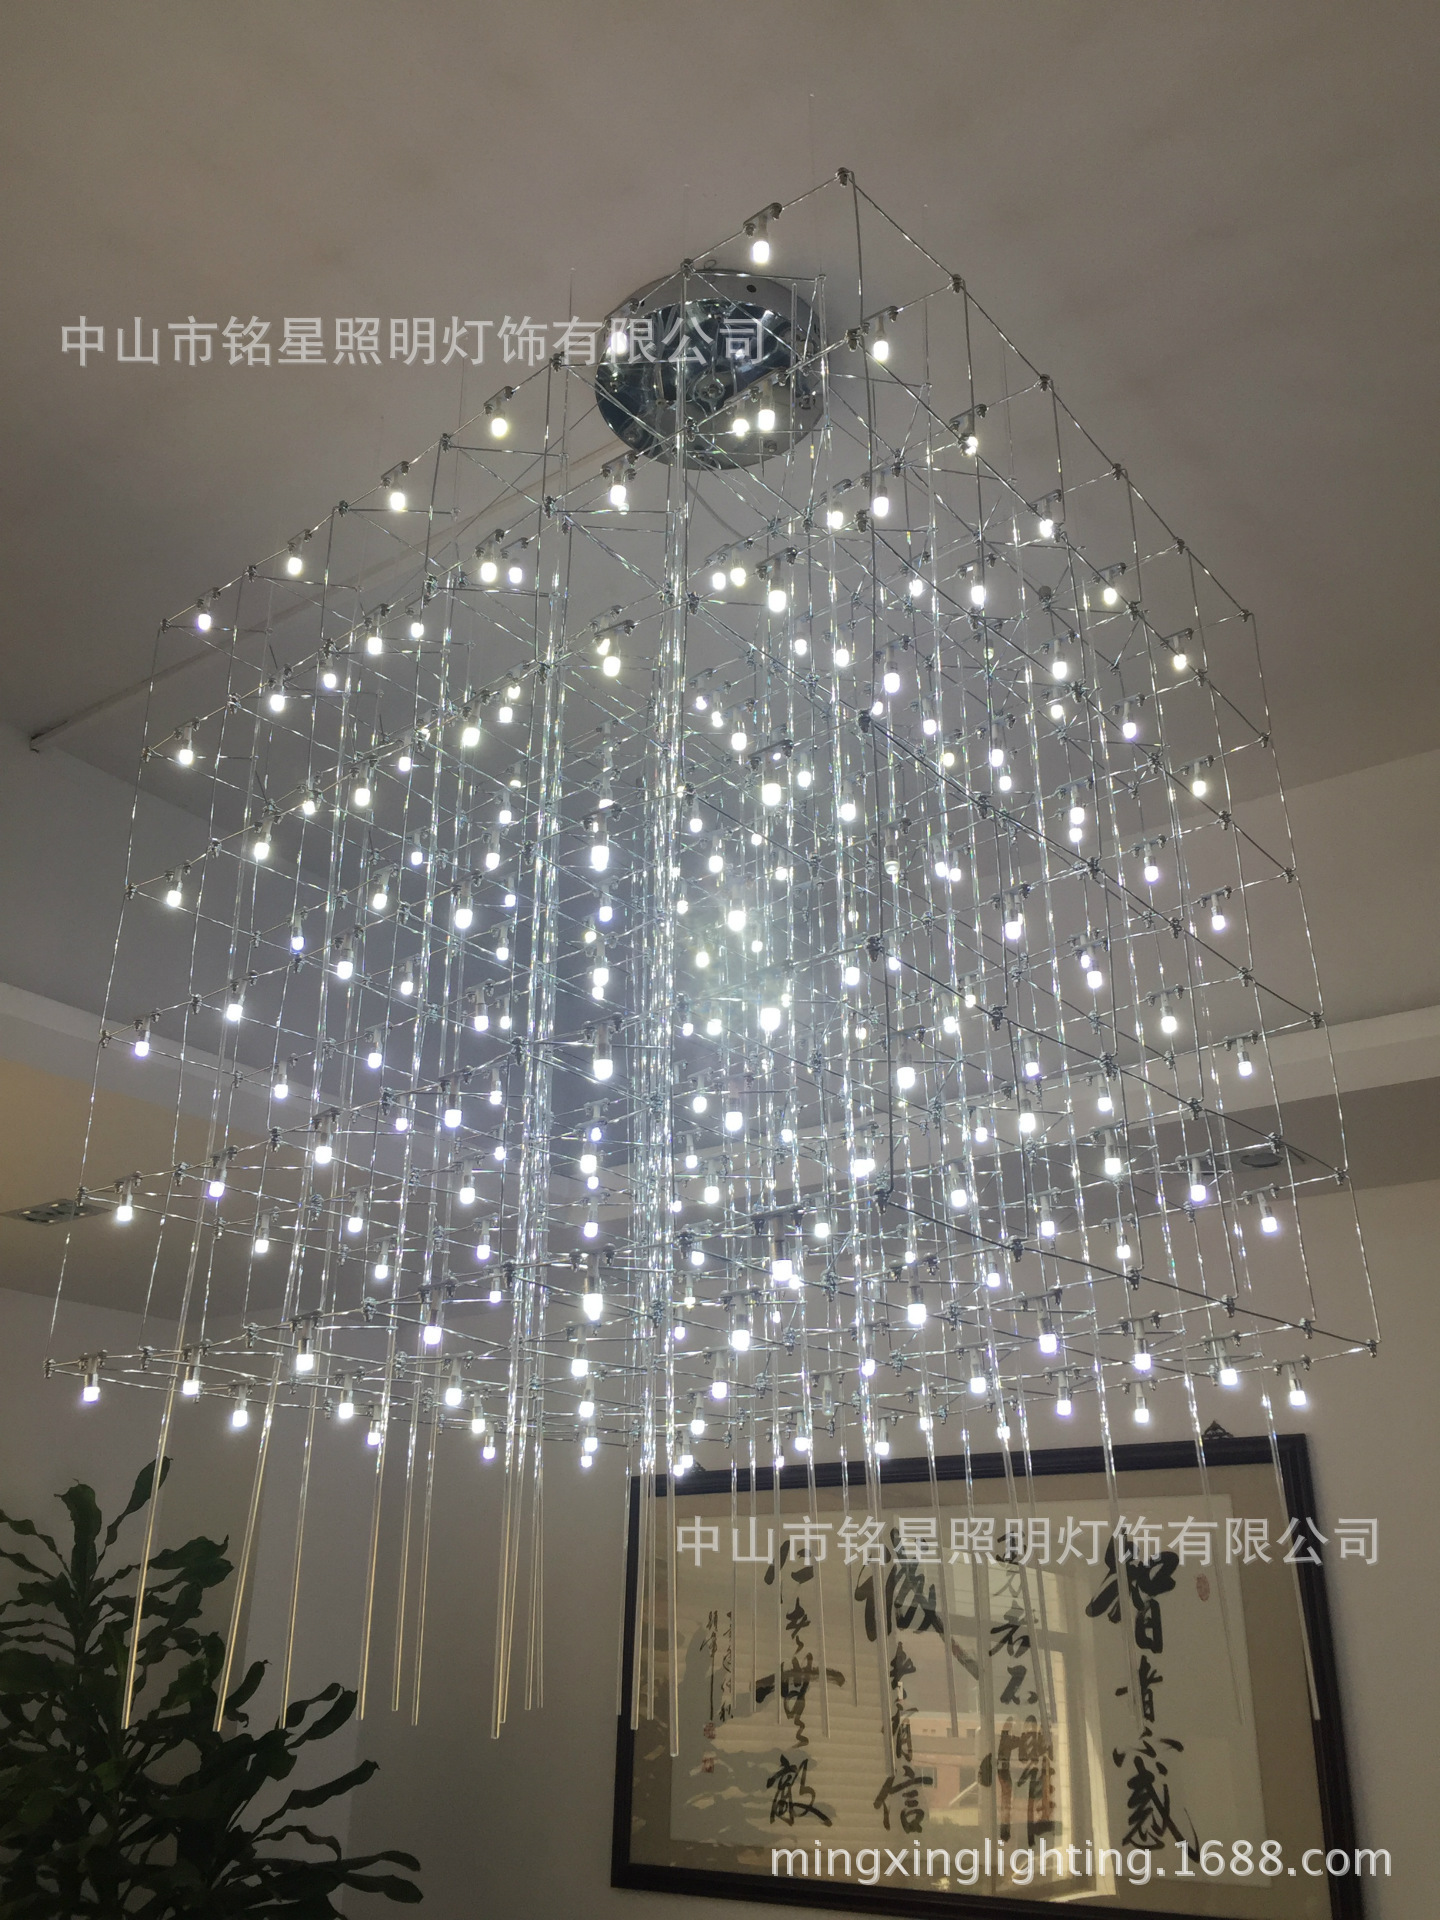 专业酒店大堂大型光立方吊灯厂家定制售楼部展厅LED光立方体灯具示例图30